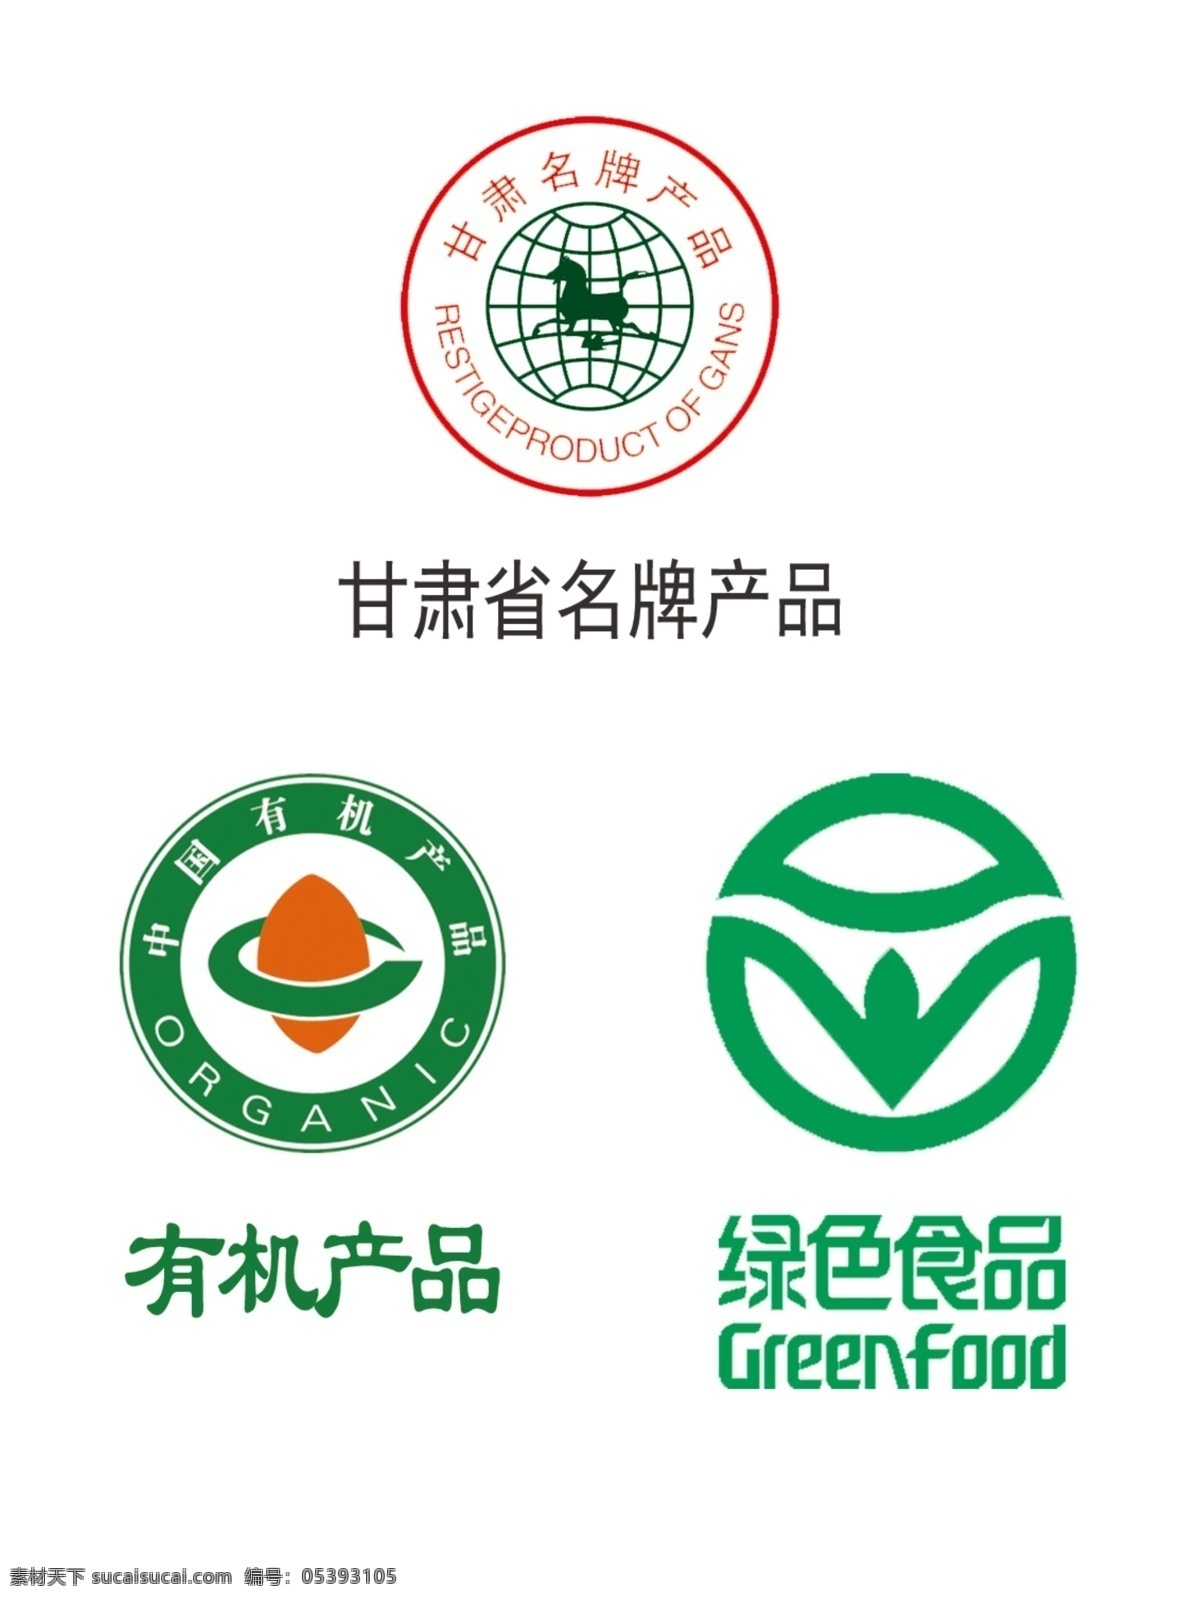 有机 绿色食品 甘肃省 名牌 产品 标志 绿色 食品 名牌产品 其他素材 logo设计